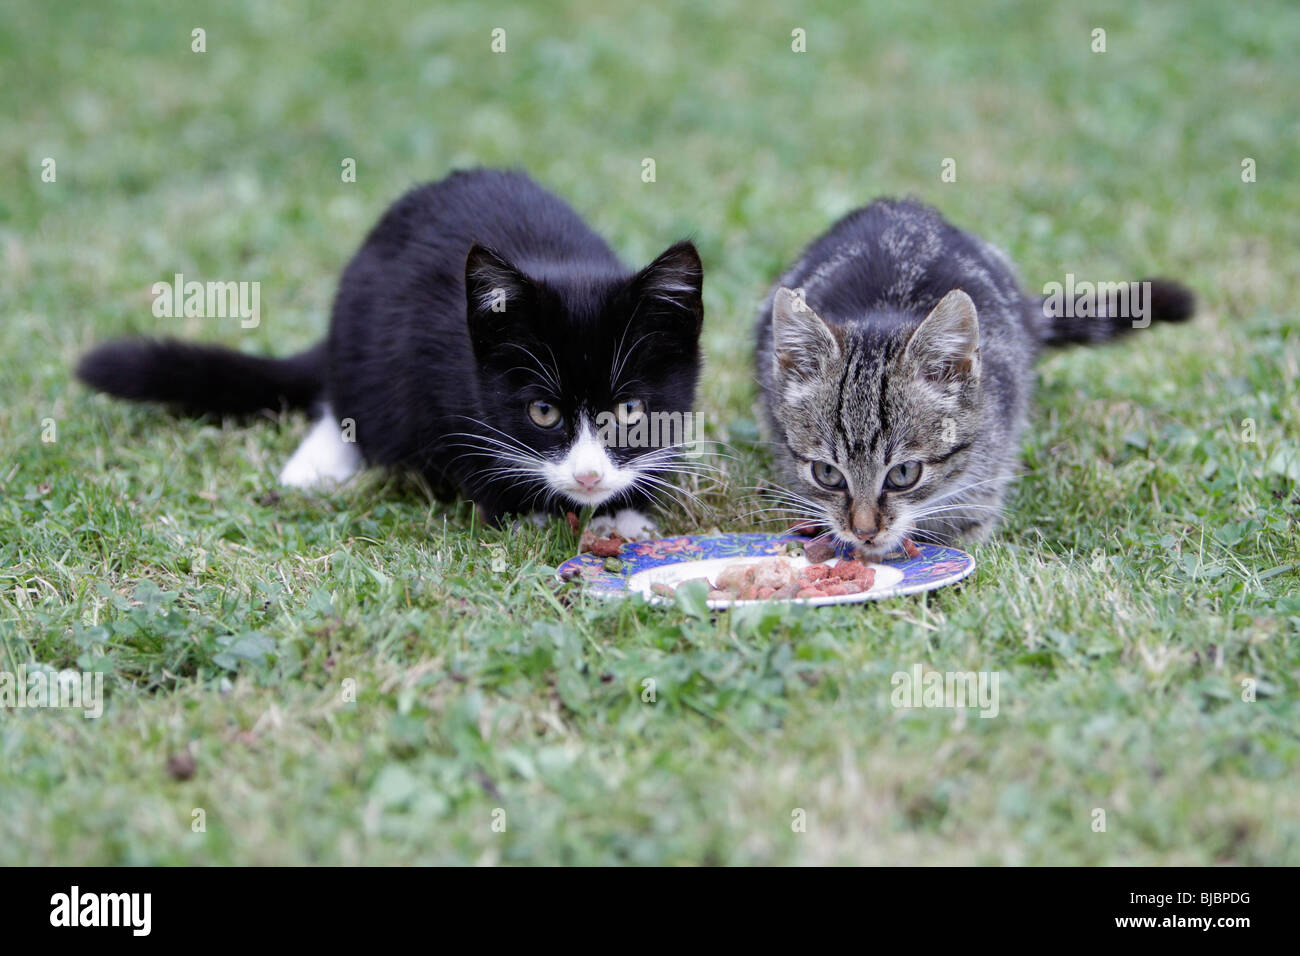 Kittens - 2 kittens feeding from plate in garden Stock Photo